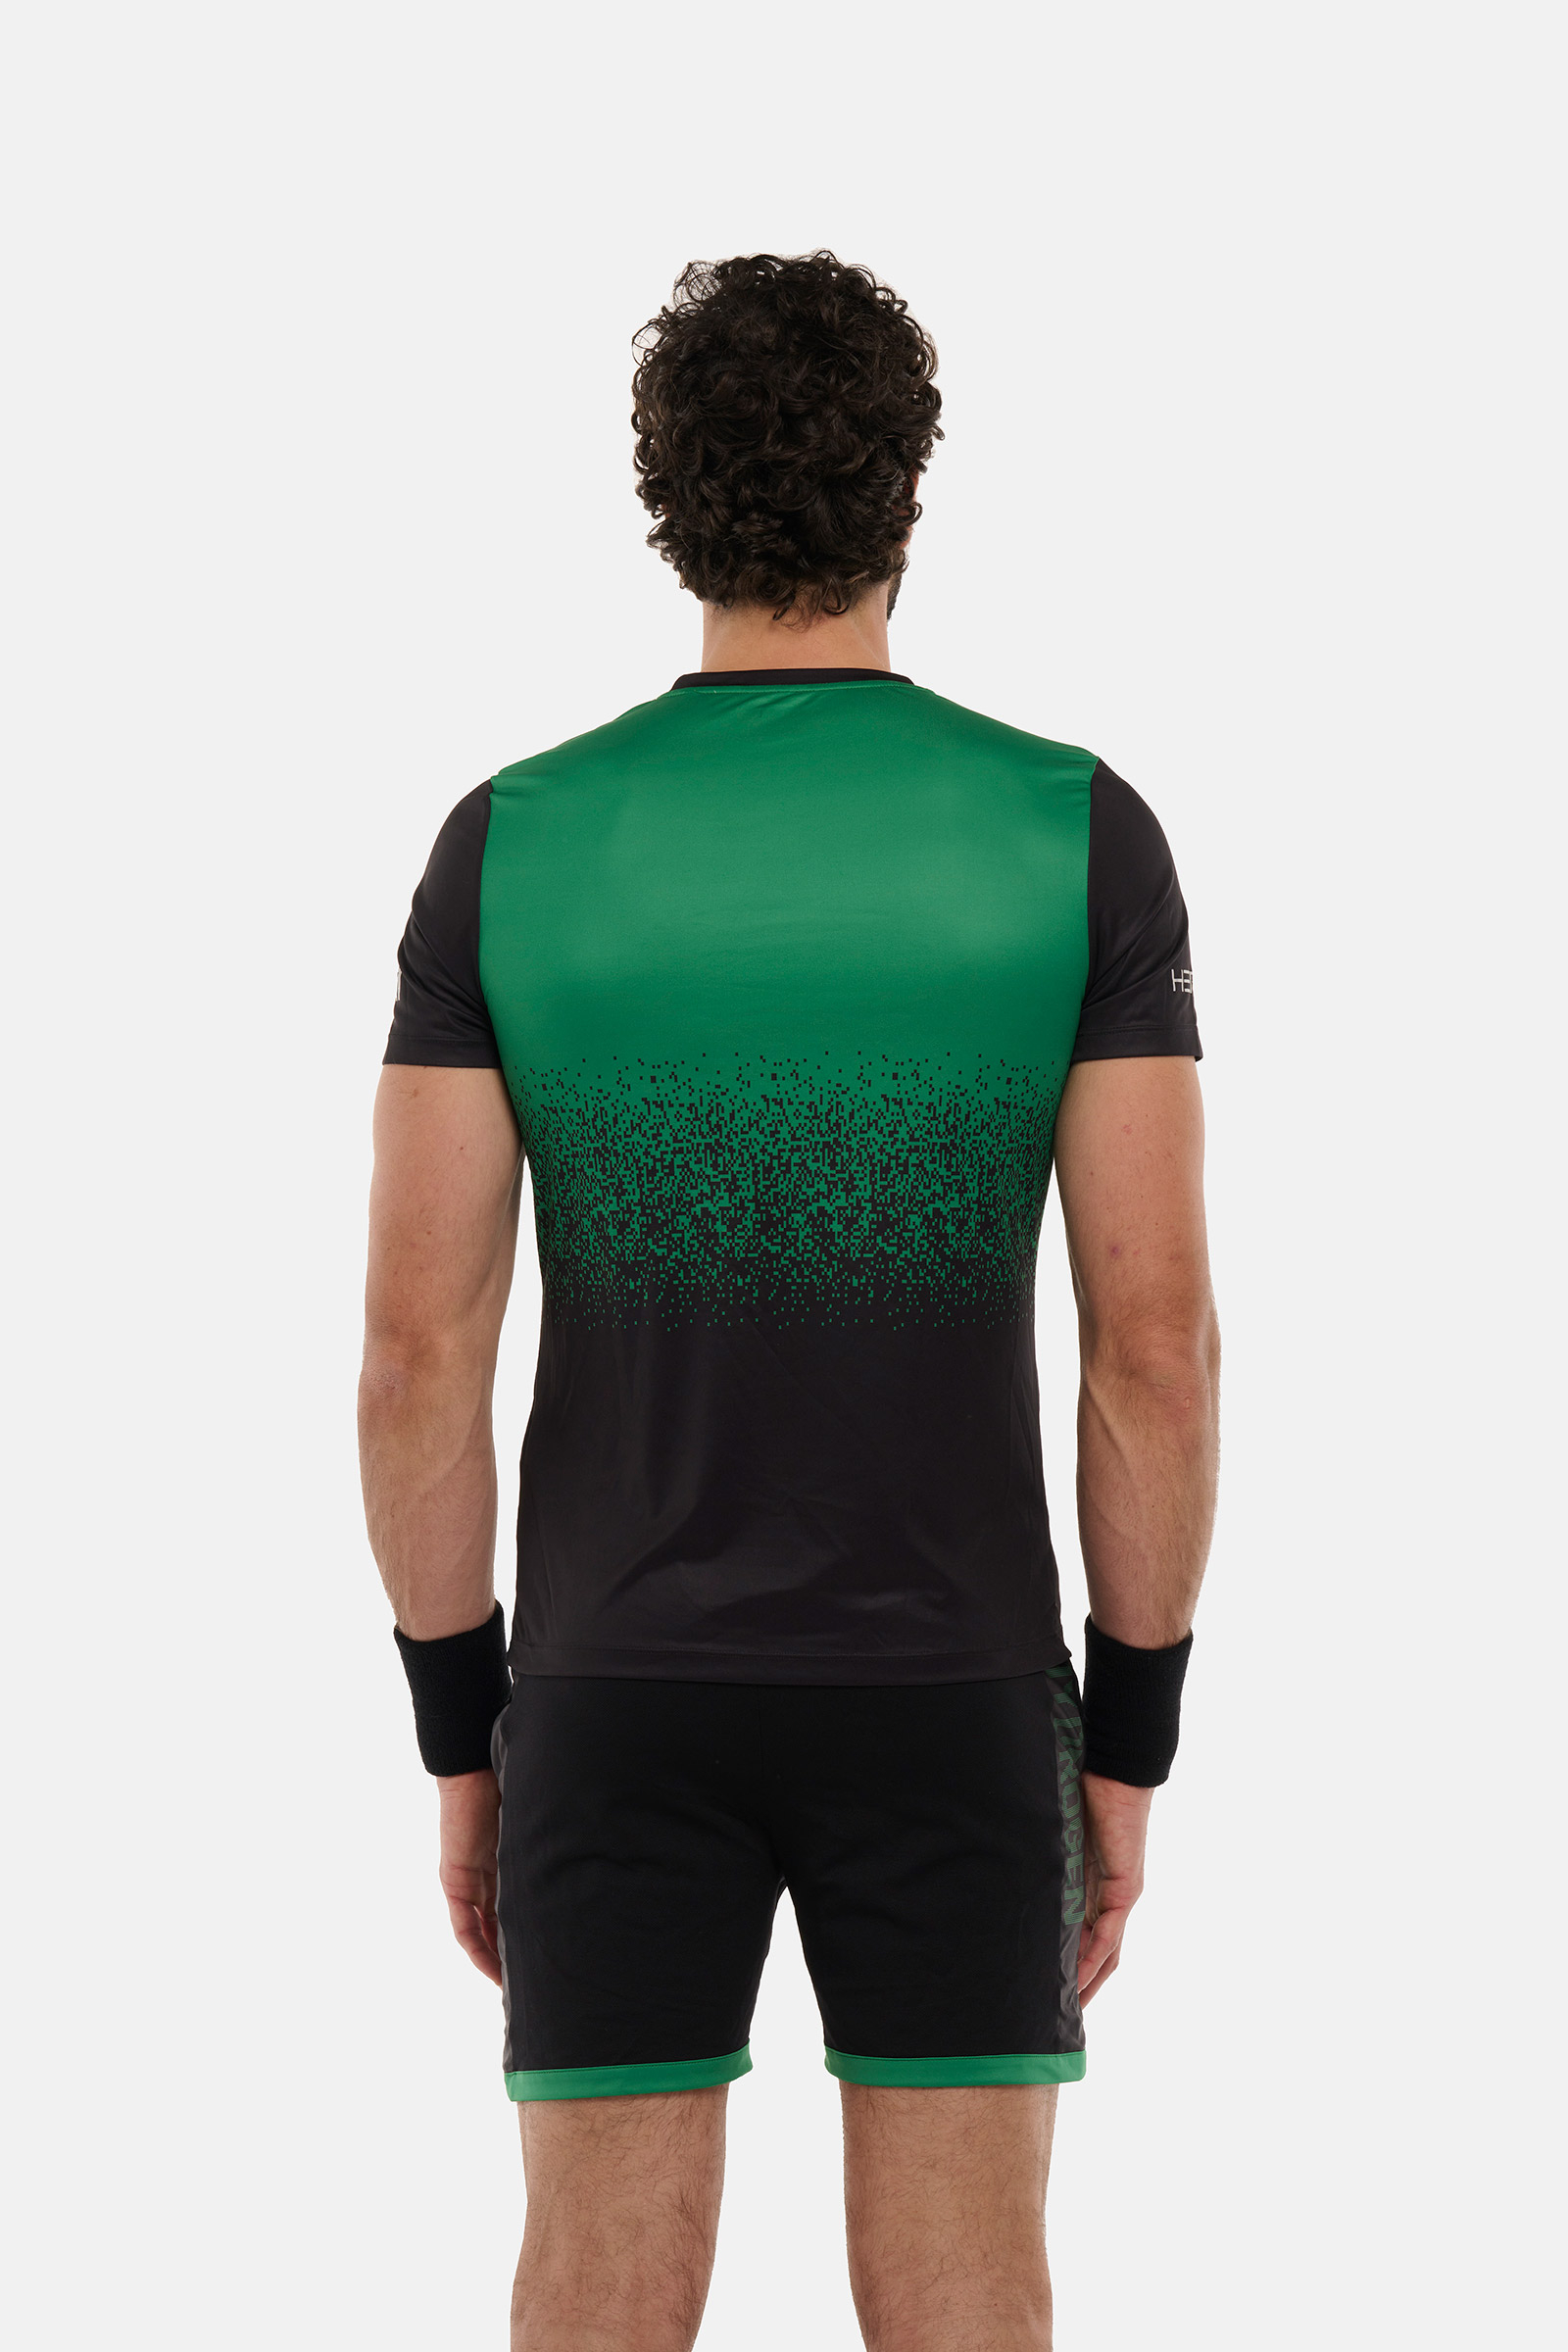 CRUMBLE TECH T-SHIRT HEROES BY HYDROGEN - BLACK,GREEN - Hydrogen - Luxury Sportwear